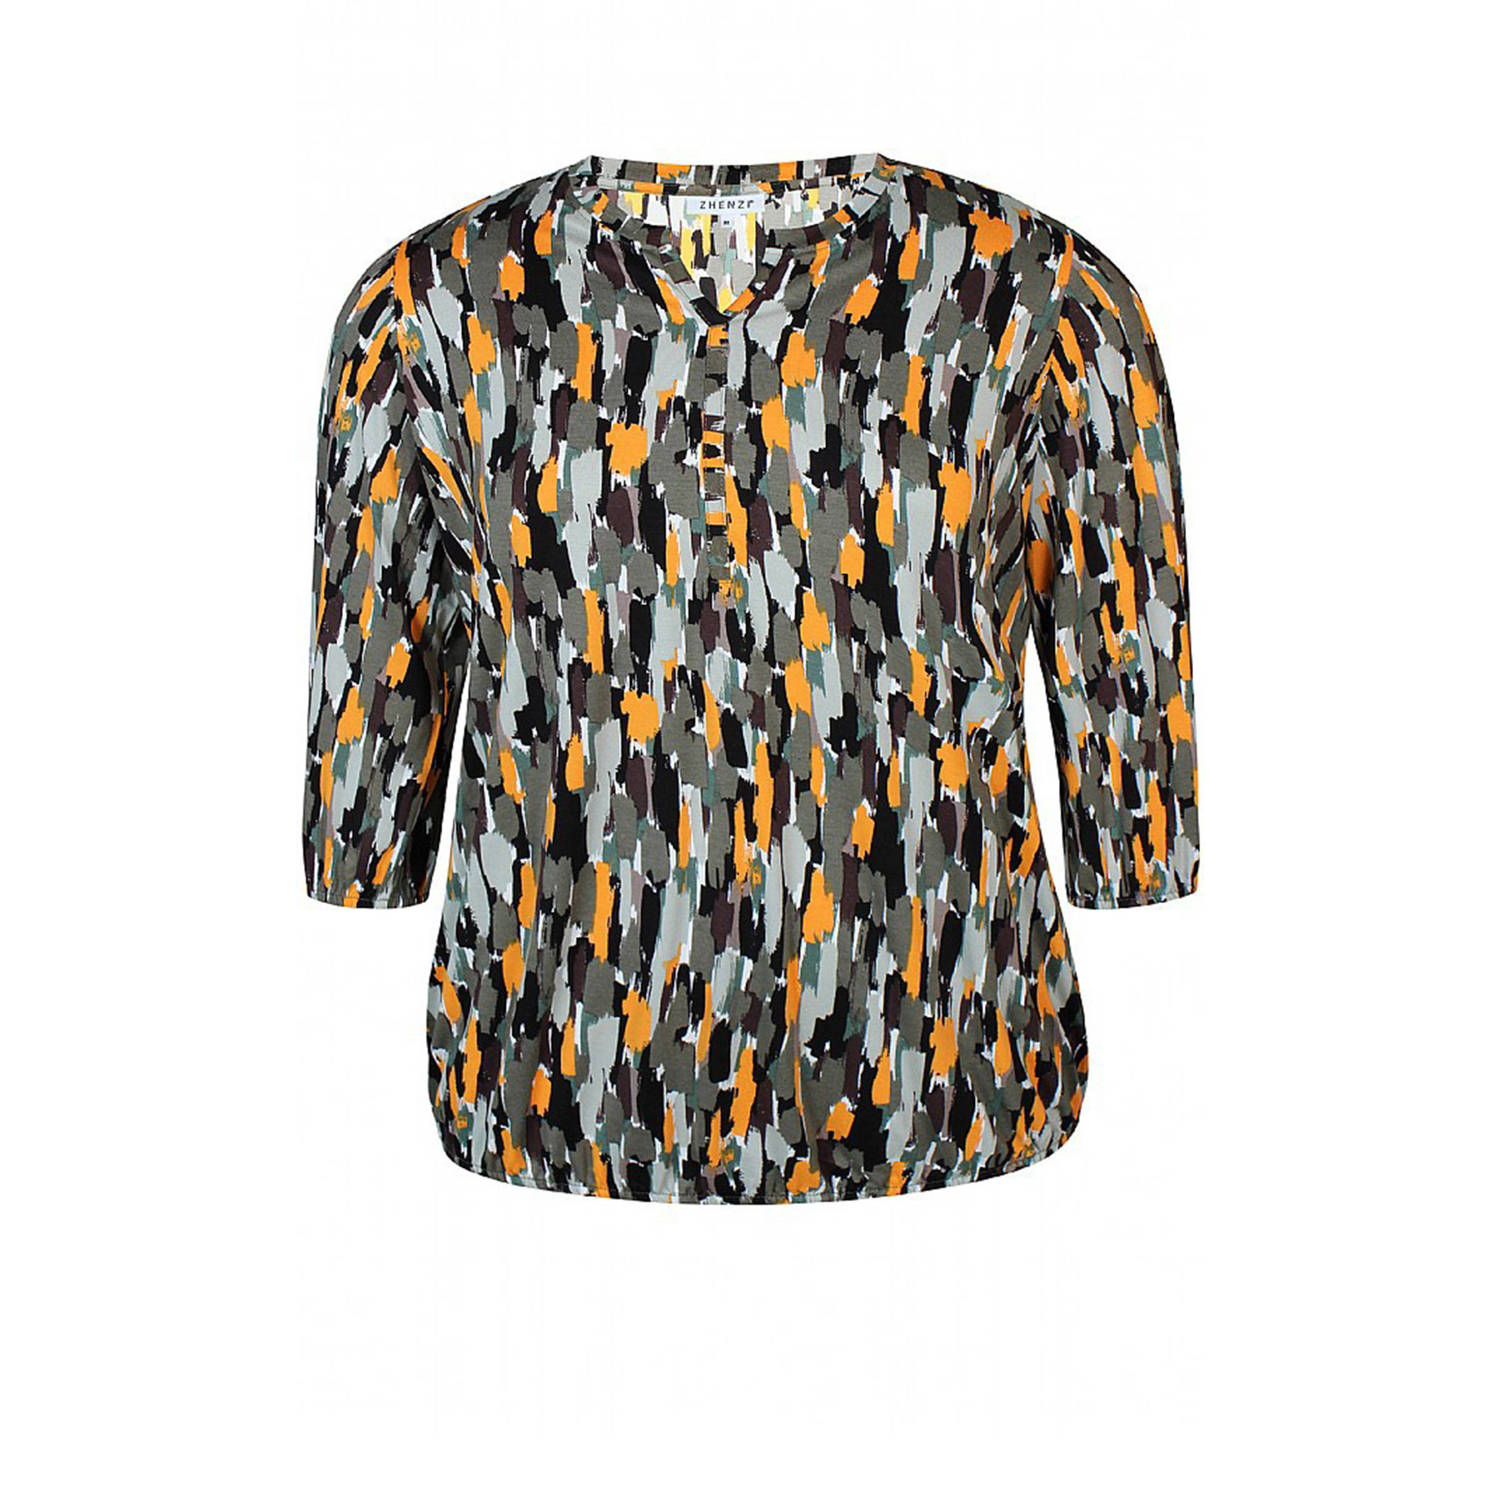 Zhenzi blousetop SYLVA met all over print olijfgroen oranje zwart